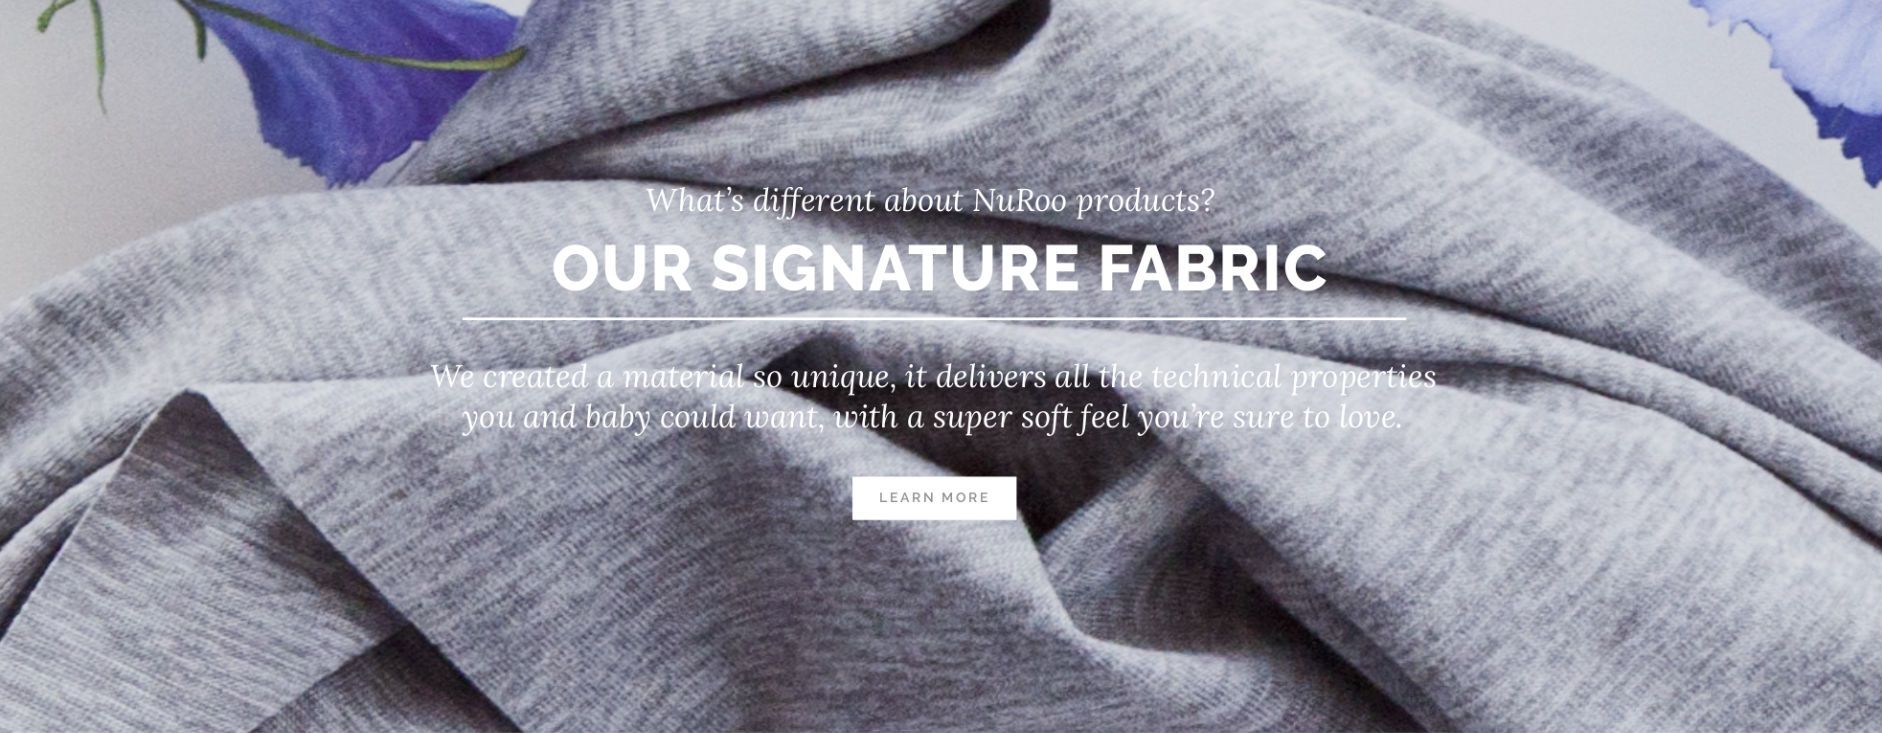 scarf-signature-fabric